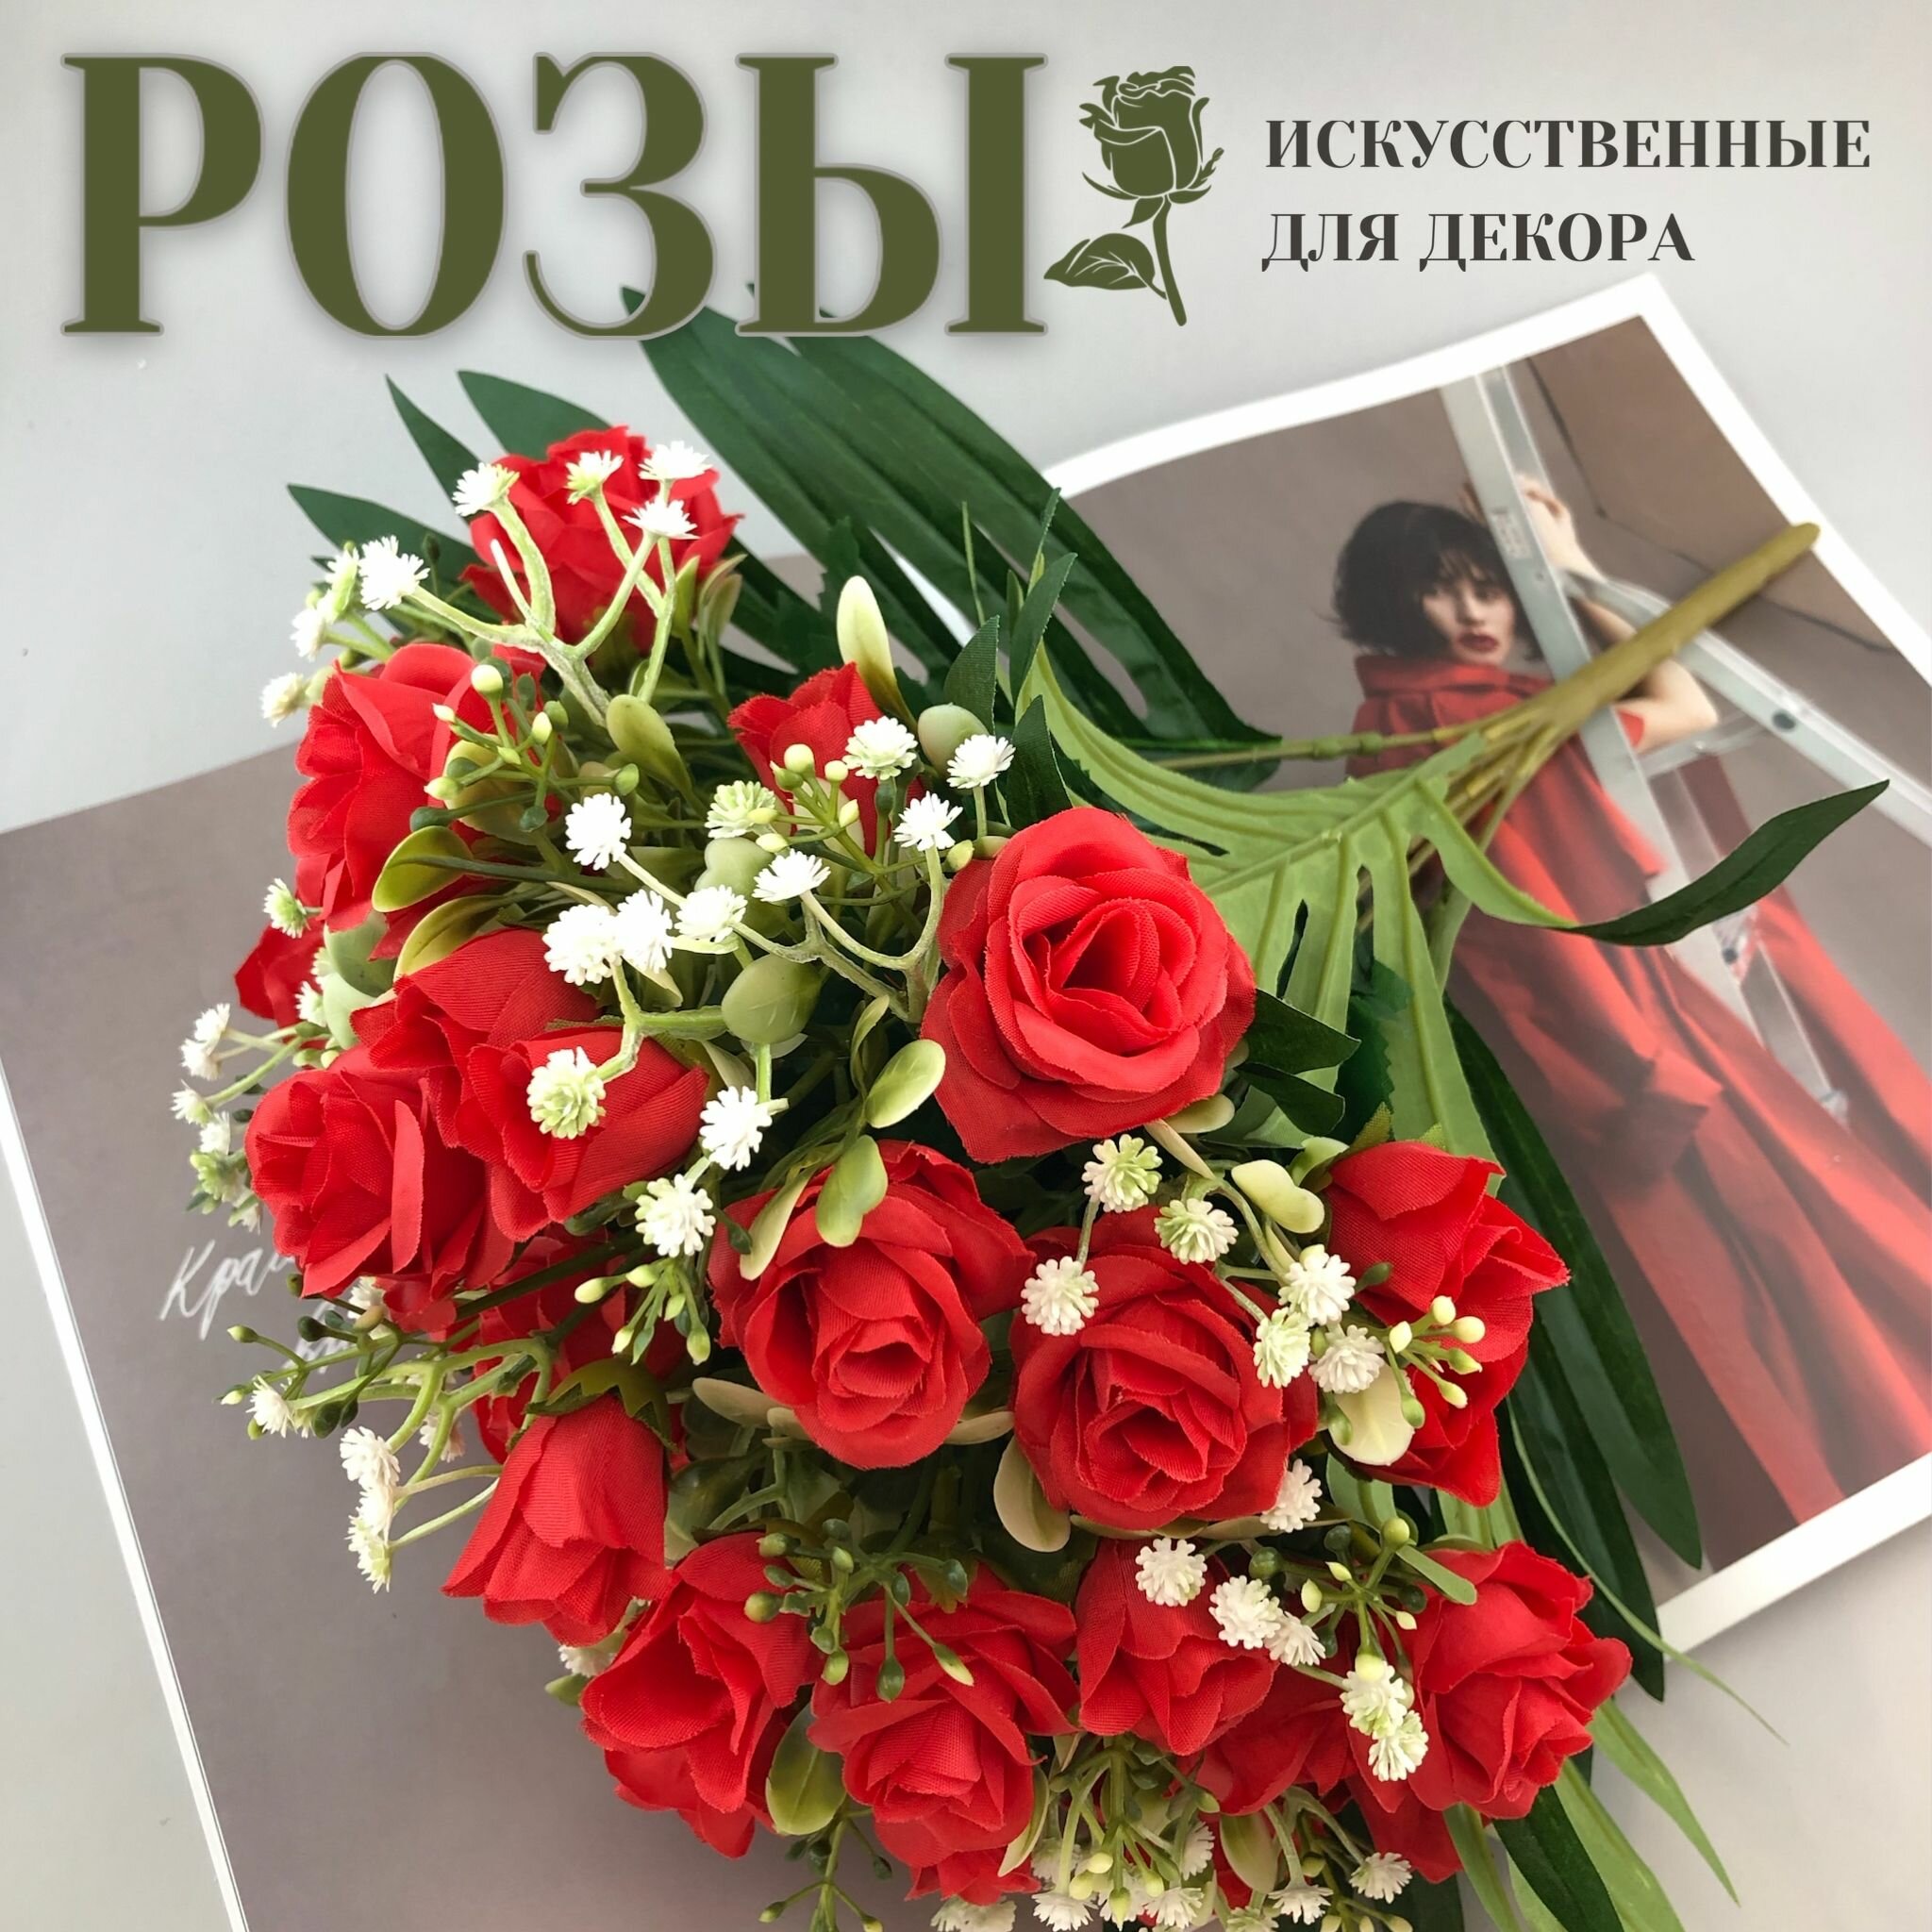 Искусственные цветы для декора "Розы" (красные, букет)